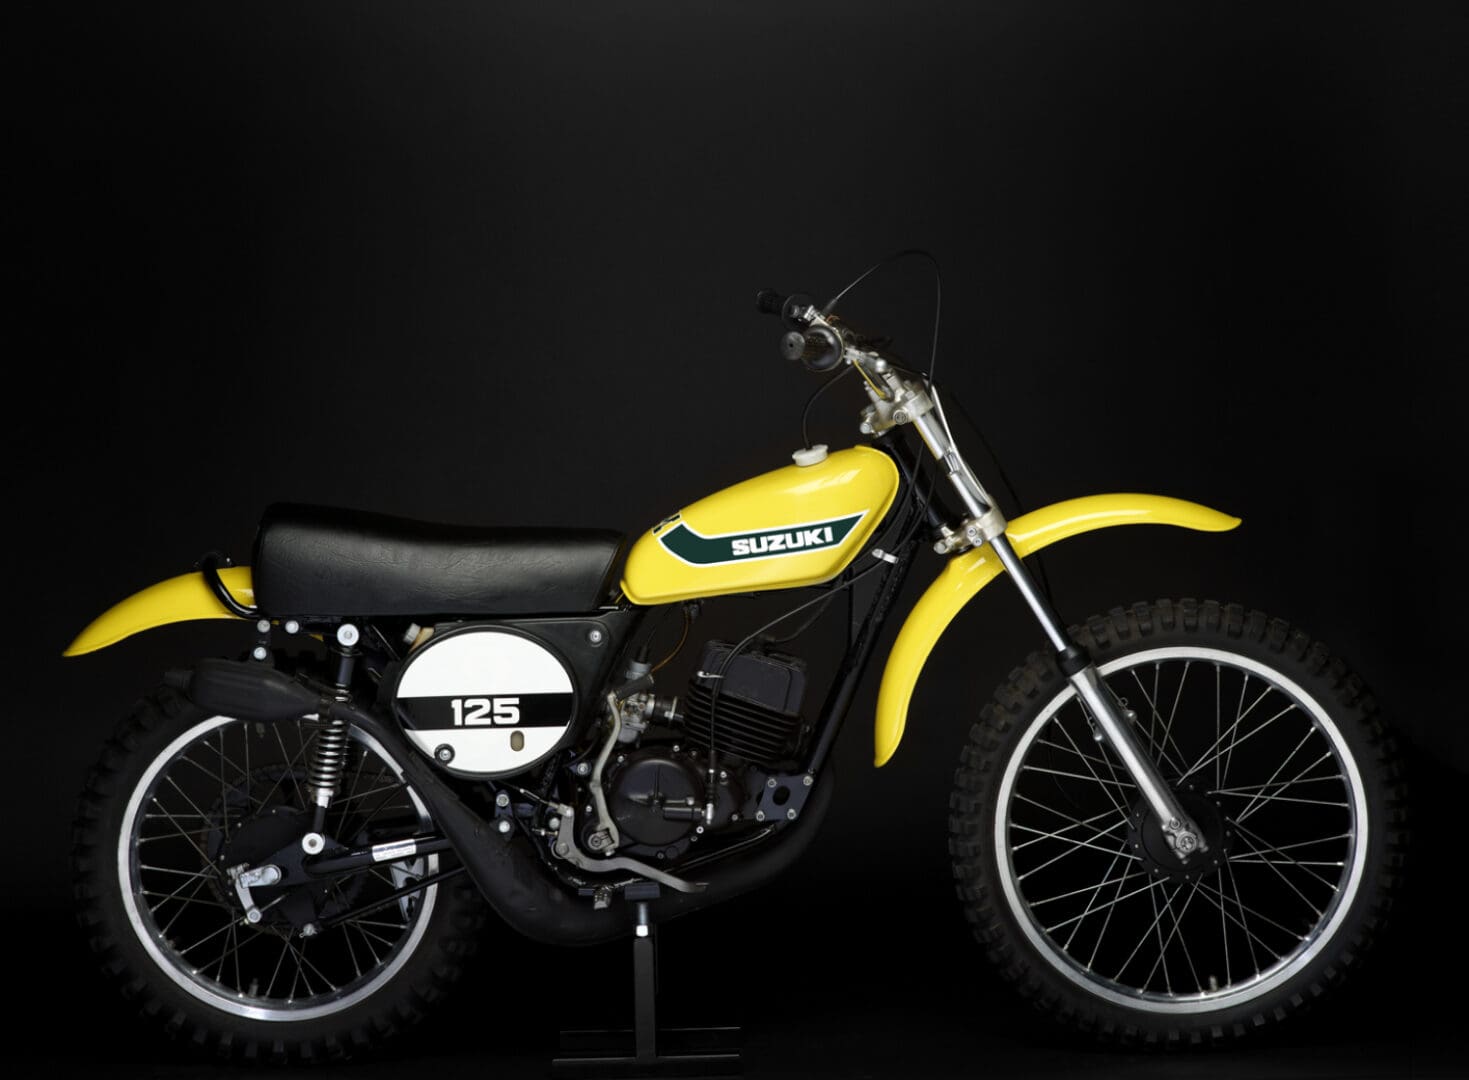 1973 Suzuki TM125K bike on black background